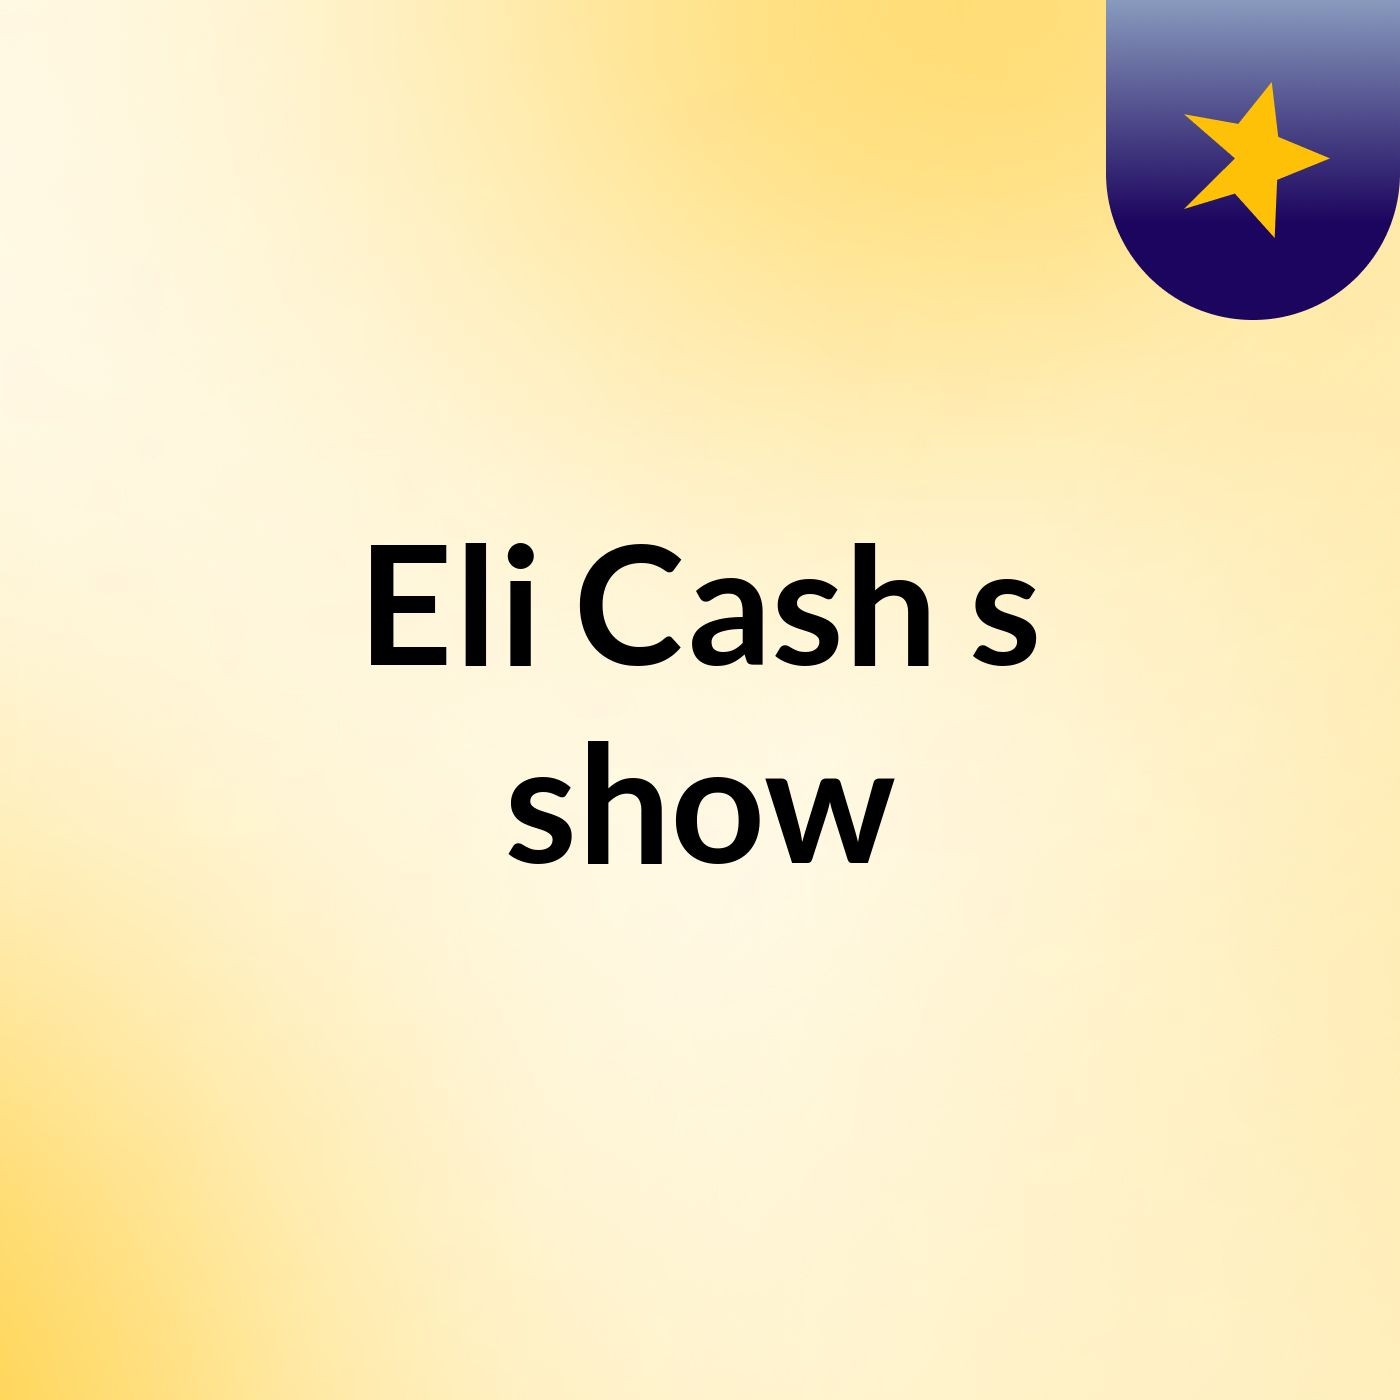 Eli Cash's show